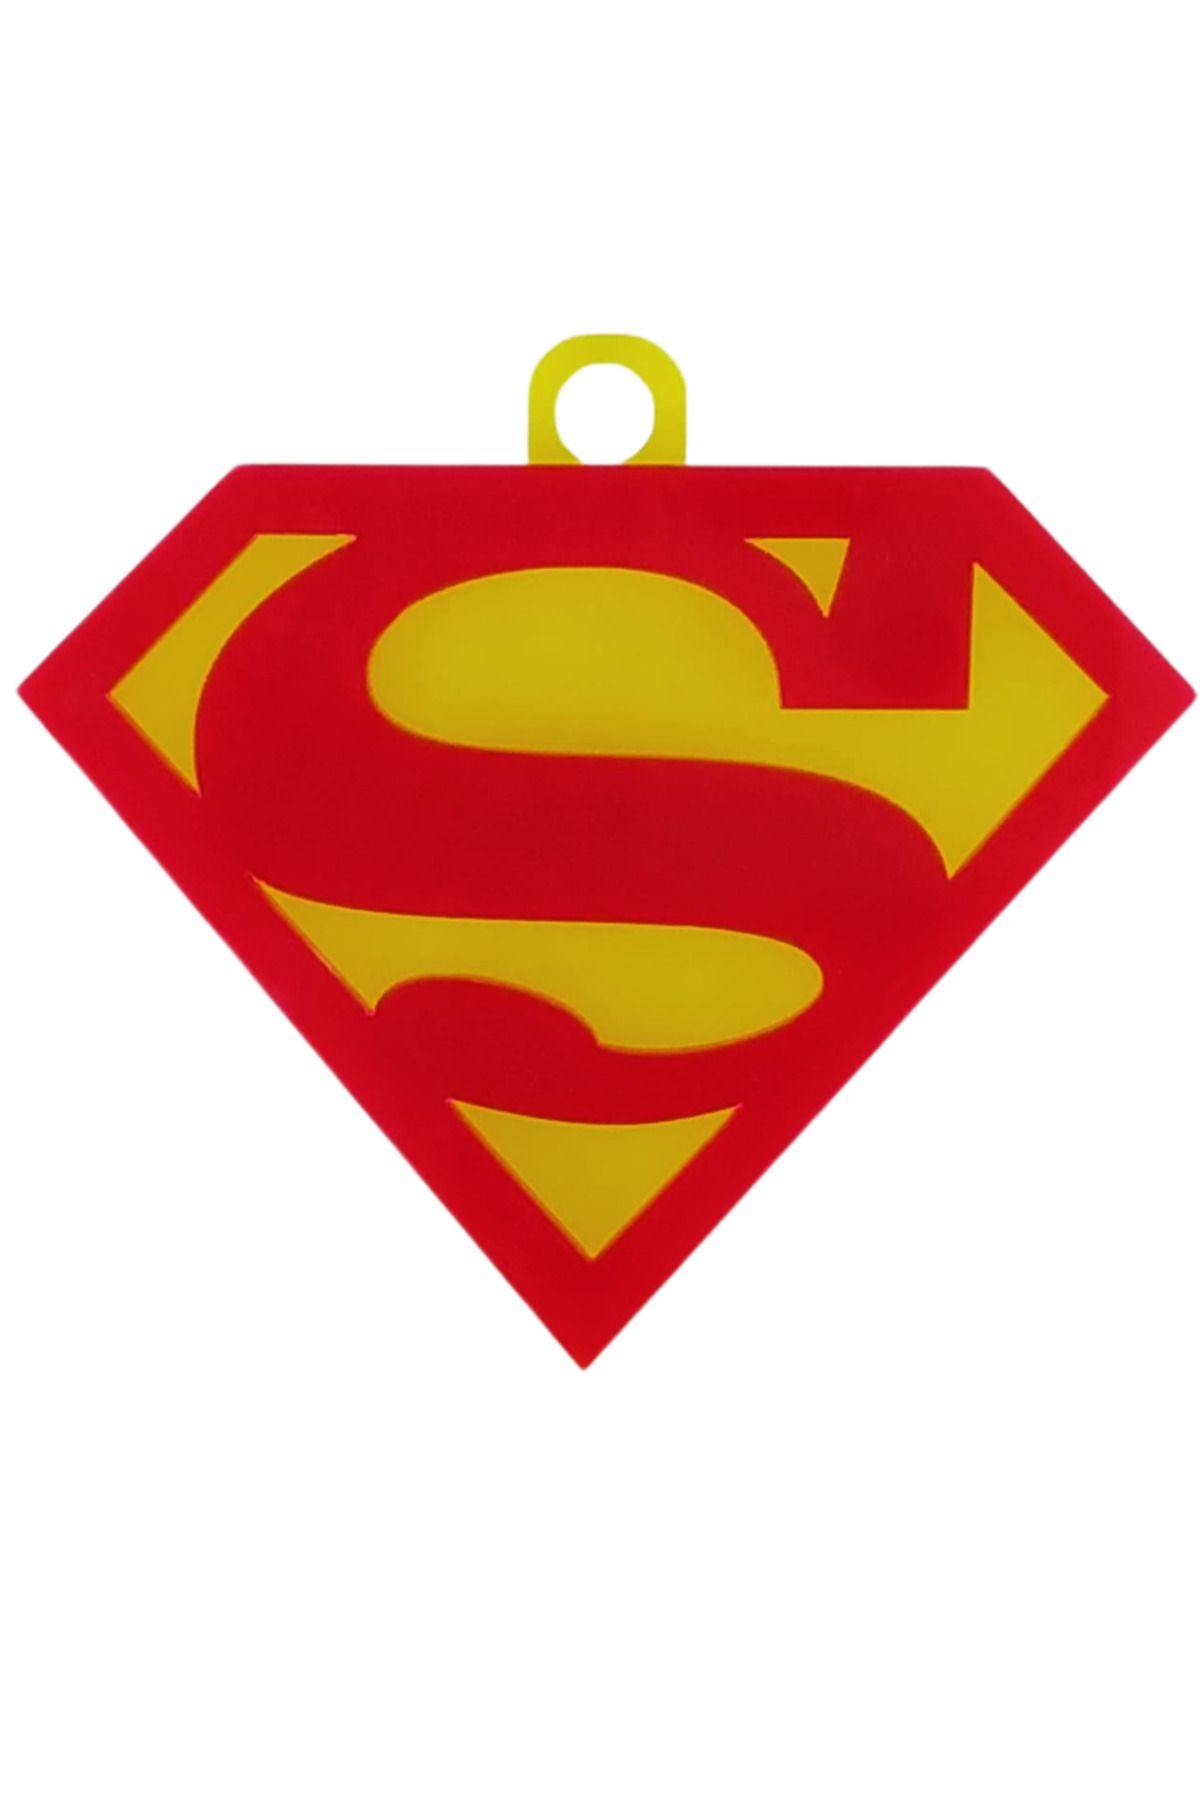 KEYF'İNCE SHOPPING Superman Logosu Arma Vantuzlu Pleksi Cam Süsü Etiket Arma Etiketçilere Özel Hediye